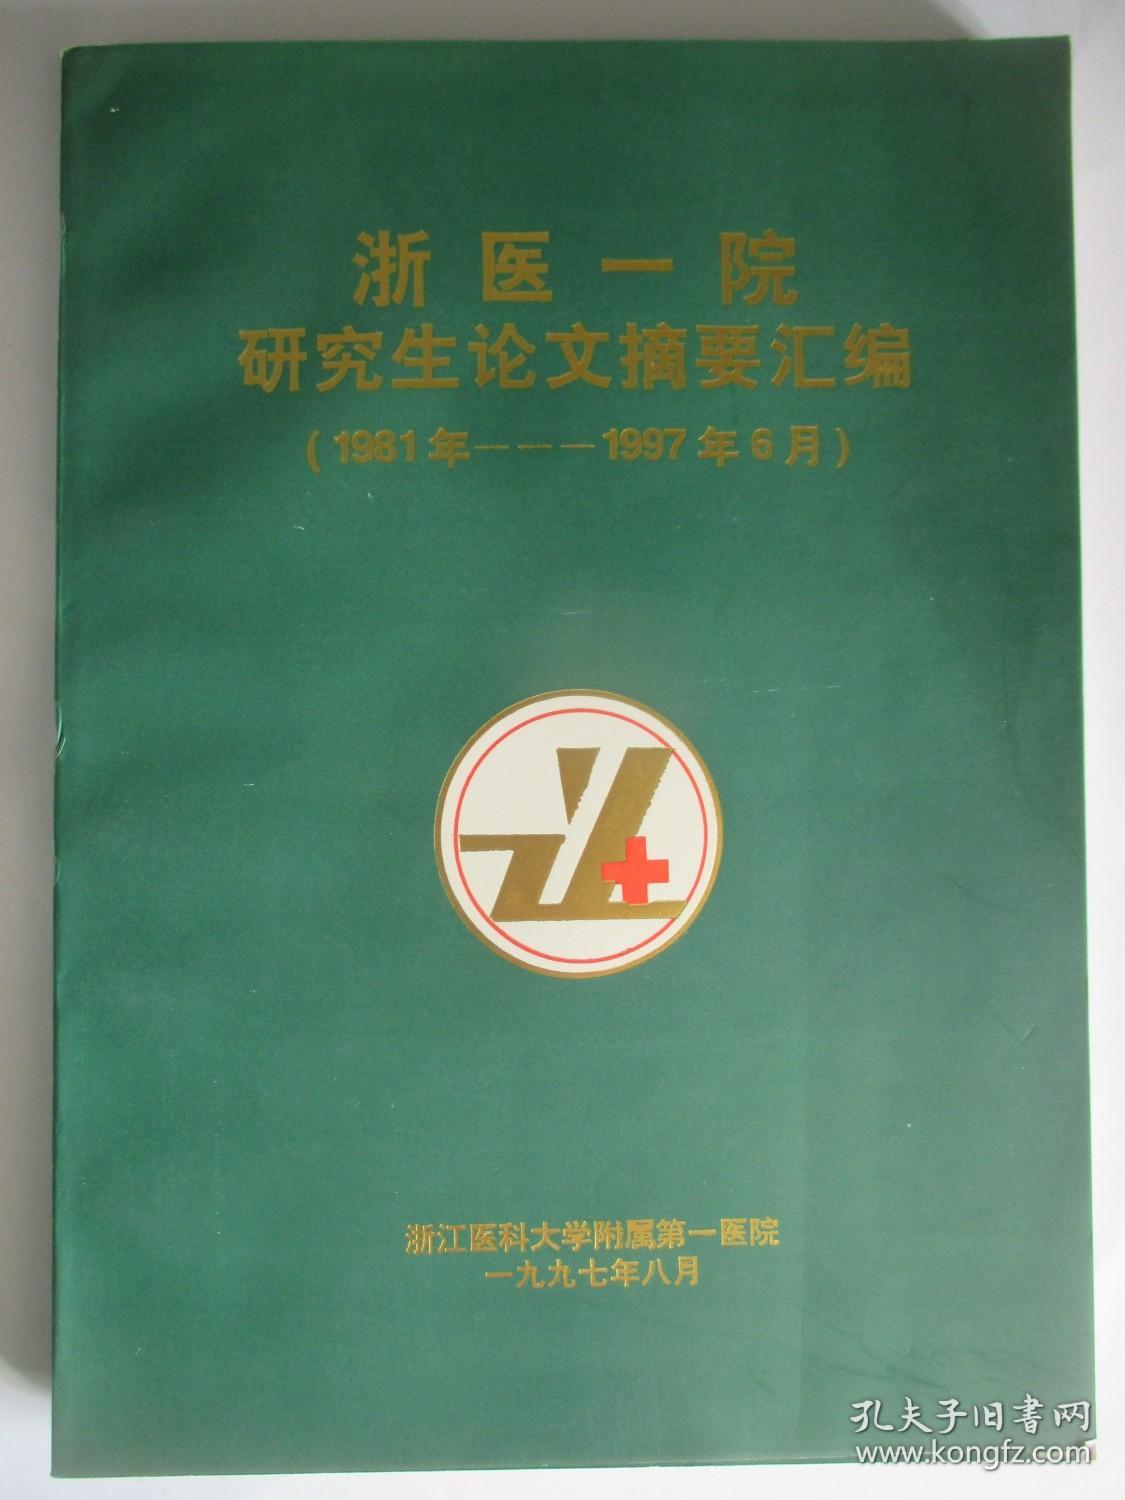 浙医一院研究生论文摘要汇编 1981年至1997年